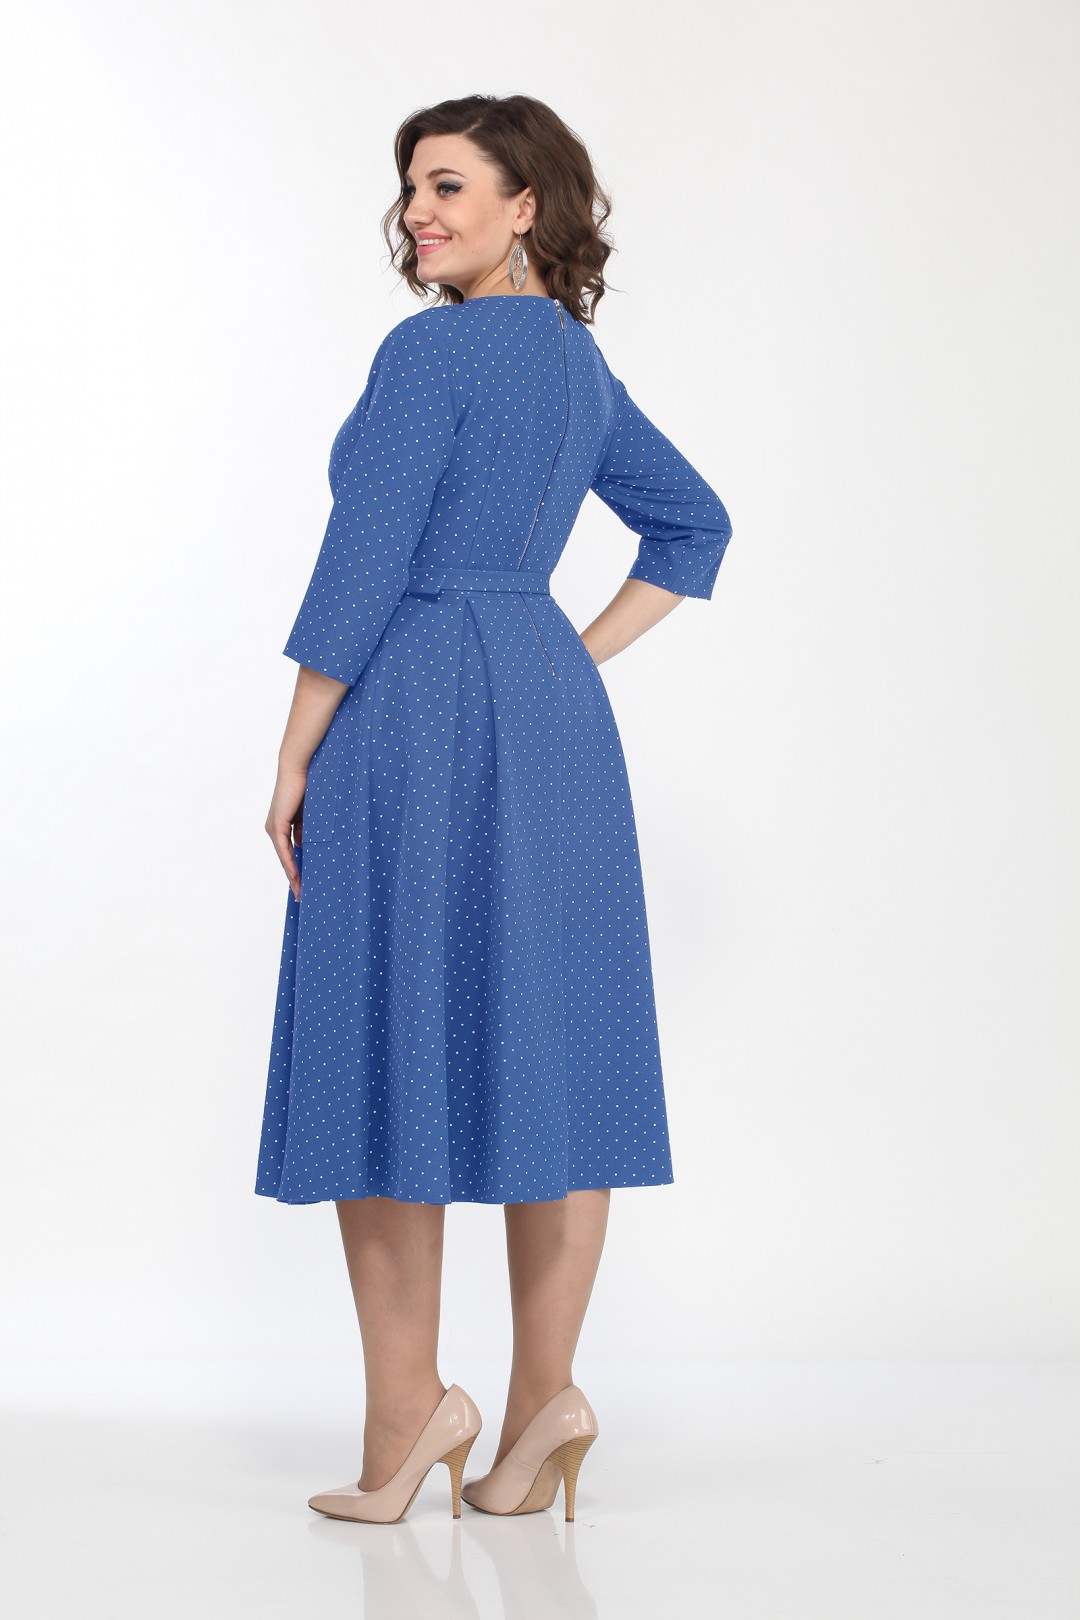 Платье LadyStyleClassic 1270 синий горошек